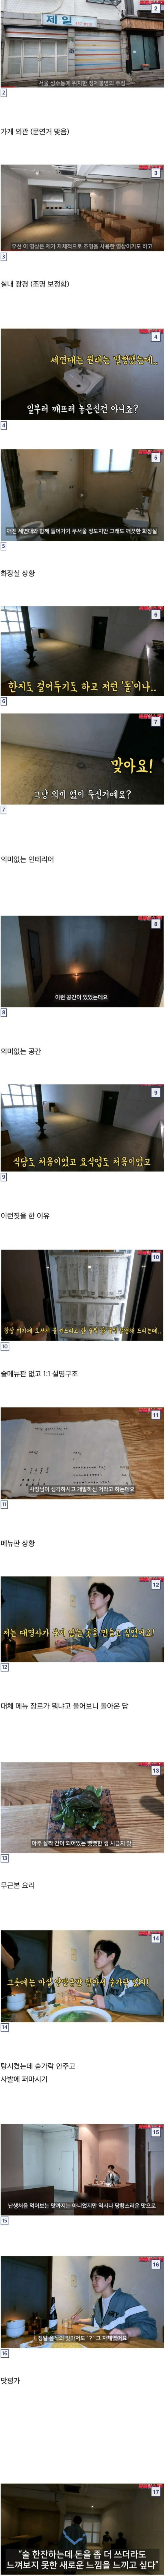 인별그램의 맛집 탐방.